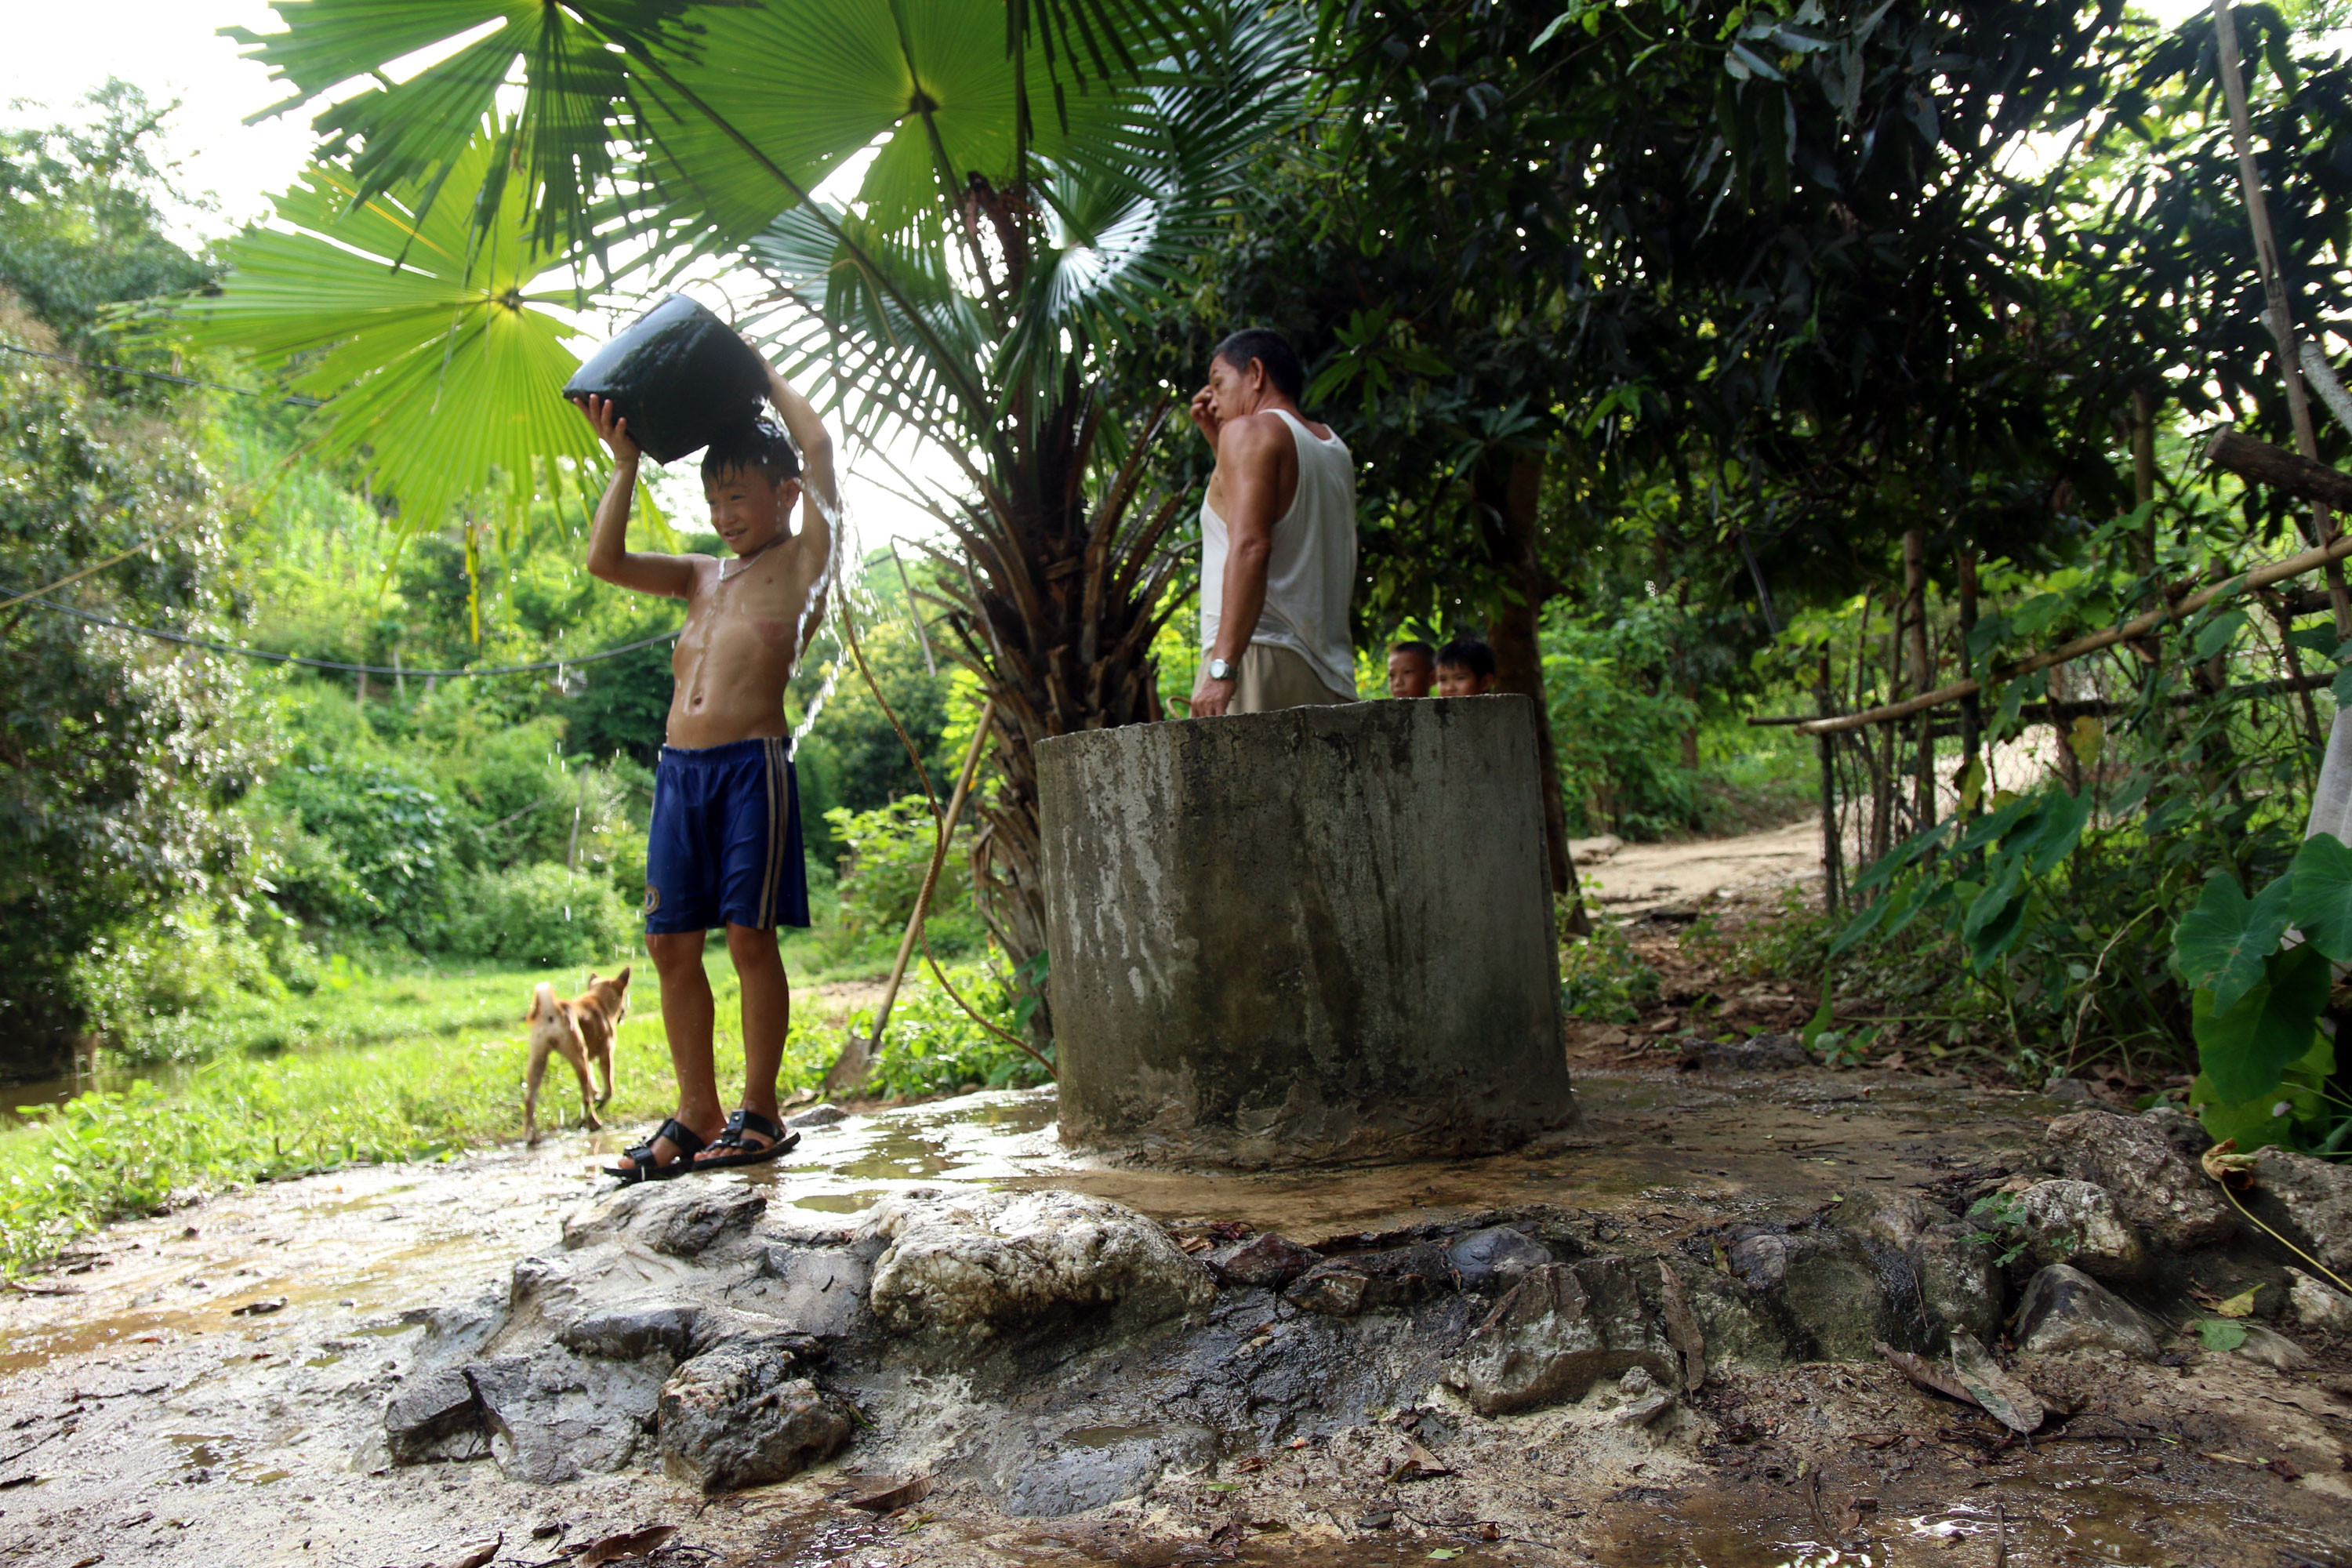 Giếng nước chỉ có đyường kính chừng 1 mét, sâu khoảng 4 mét và được người dân đóng góp xây thành, đổ bê tông chung quanh để tiện sinh hoạt và giữ gìn vệ sinh. Ảnh: Đào Thọ